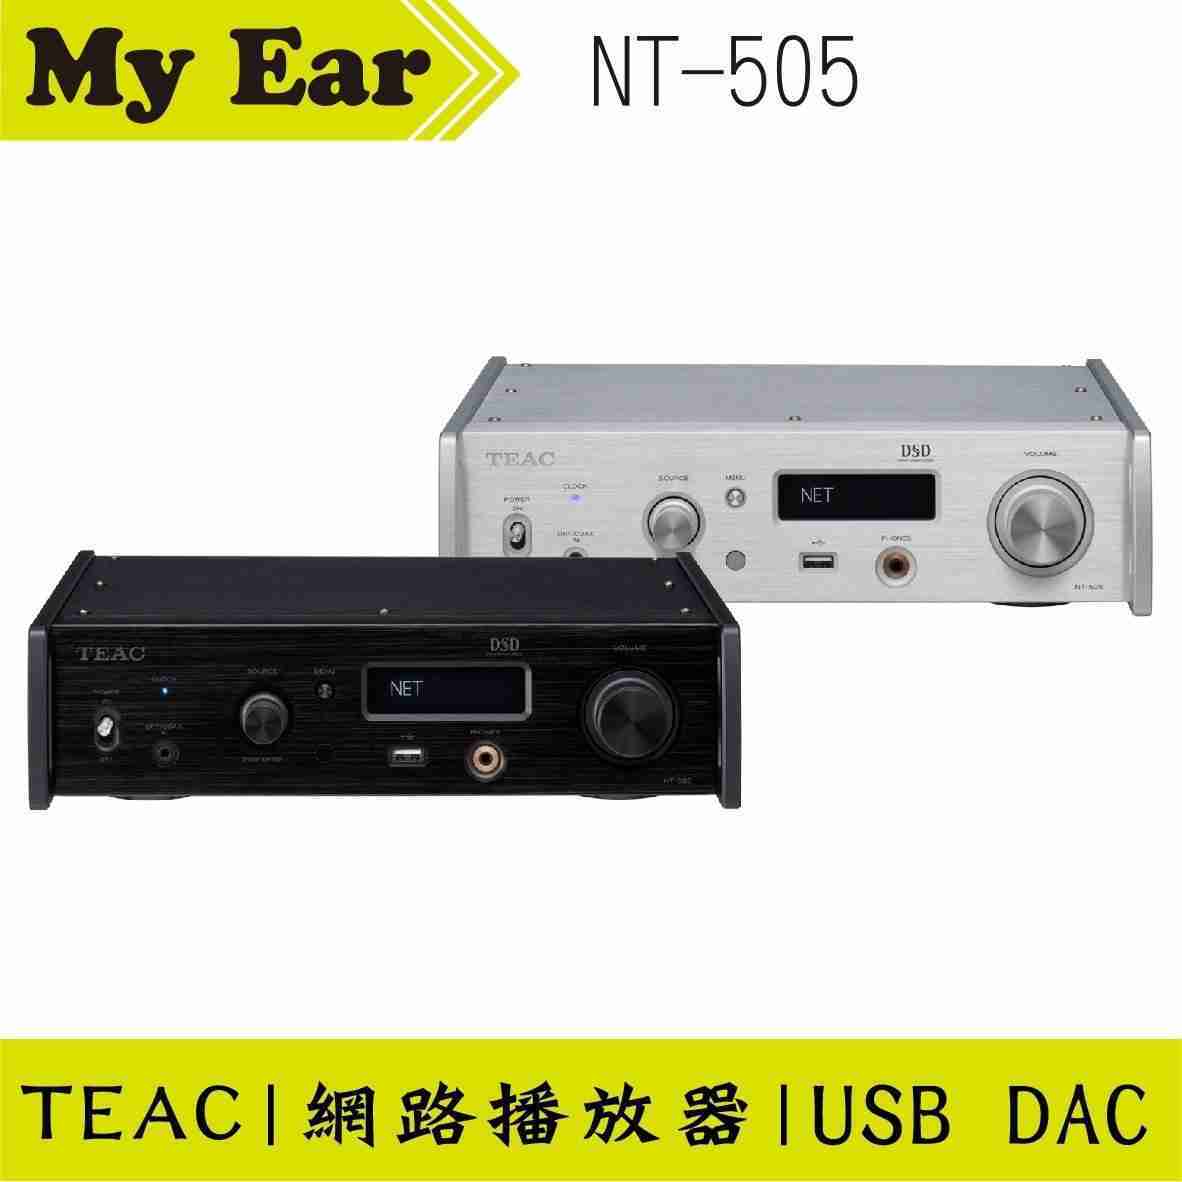 TEAC NT-505 USB DAC 網路串流播放器 黑色 | My Ear 耳機專門店